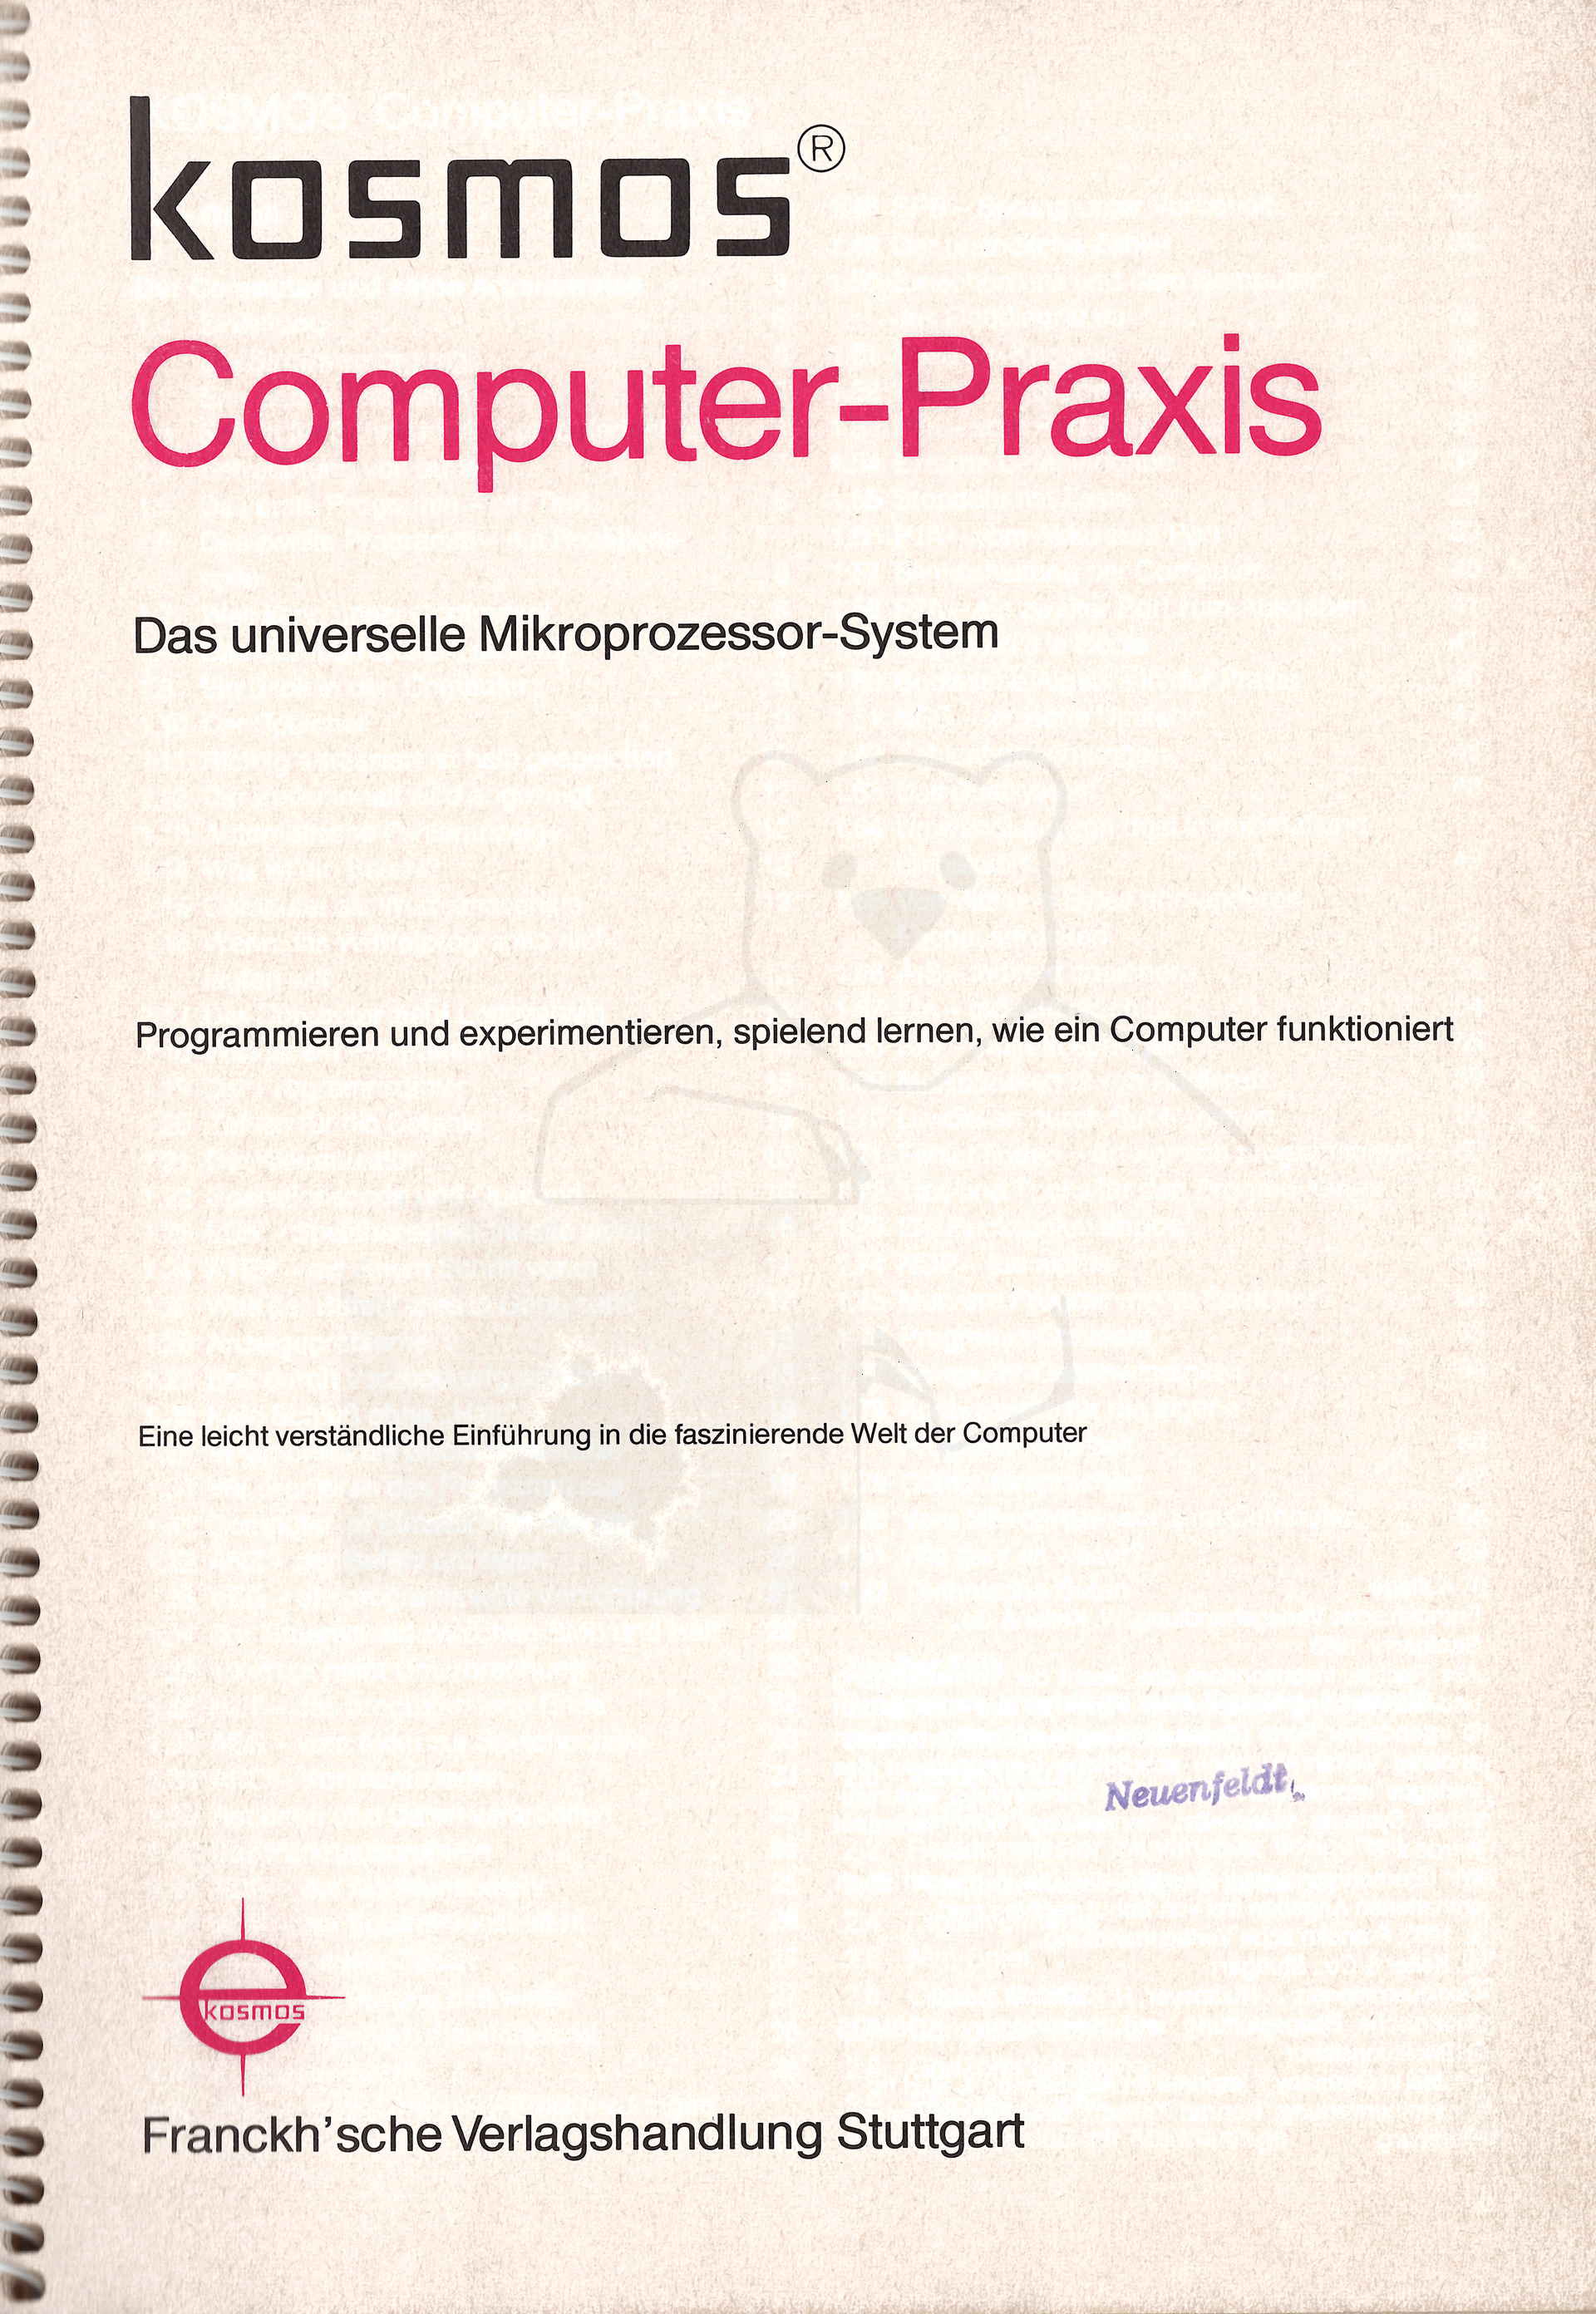 Kosmos Computer Praxis Handbuch Seite 2